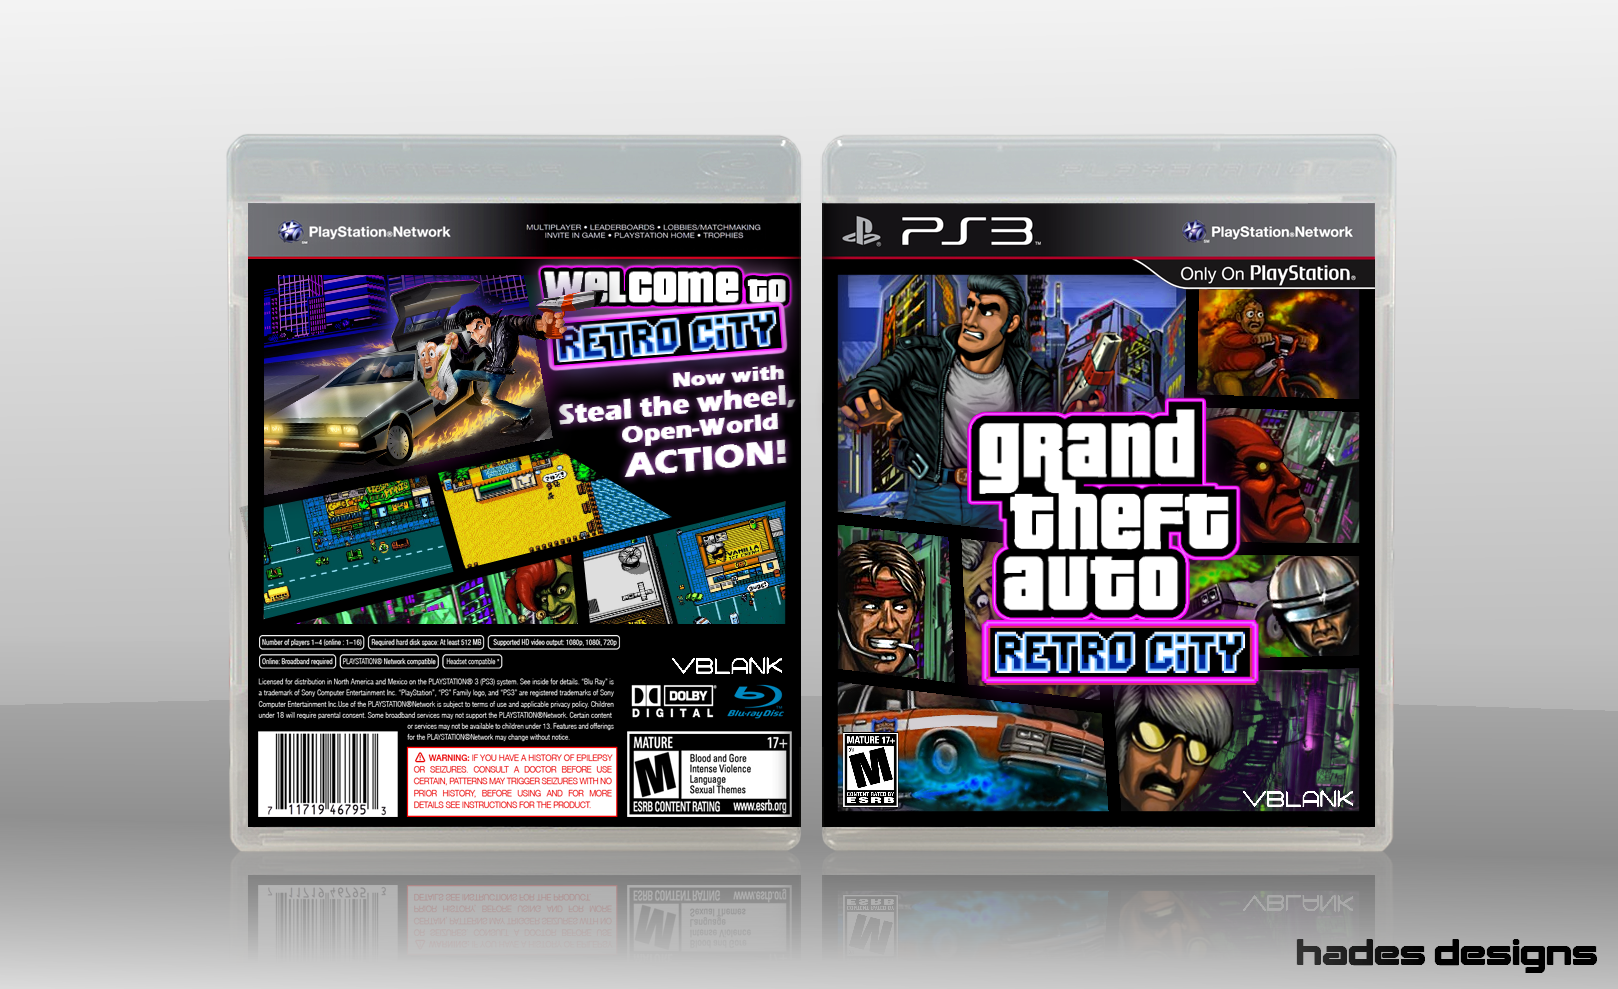 Grand Theft Auto: Retro City box cover